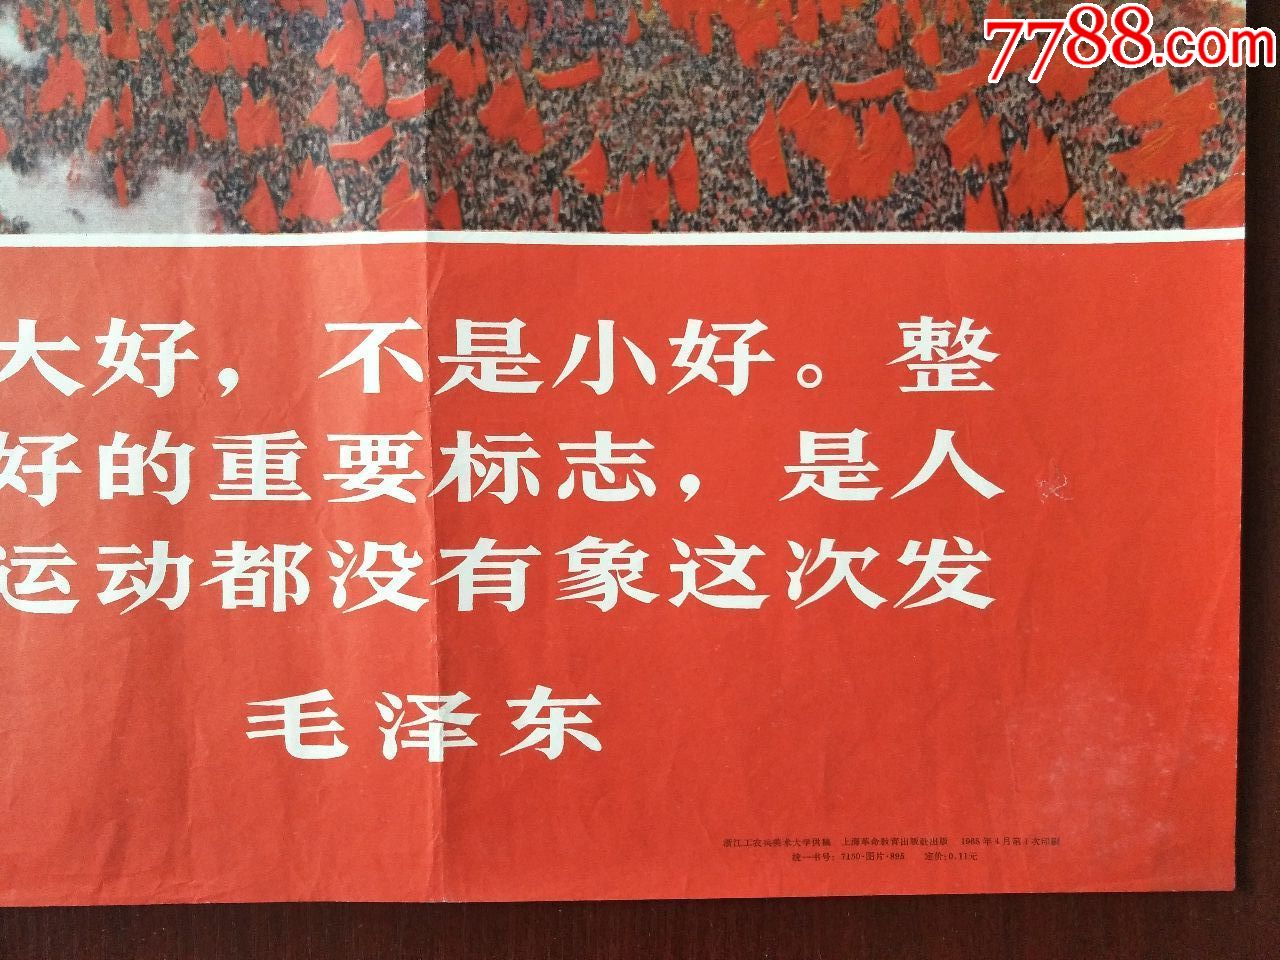 全国的无产阶级文化大革命形势大好,,,浙江工农兵美术大学供稿